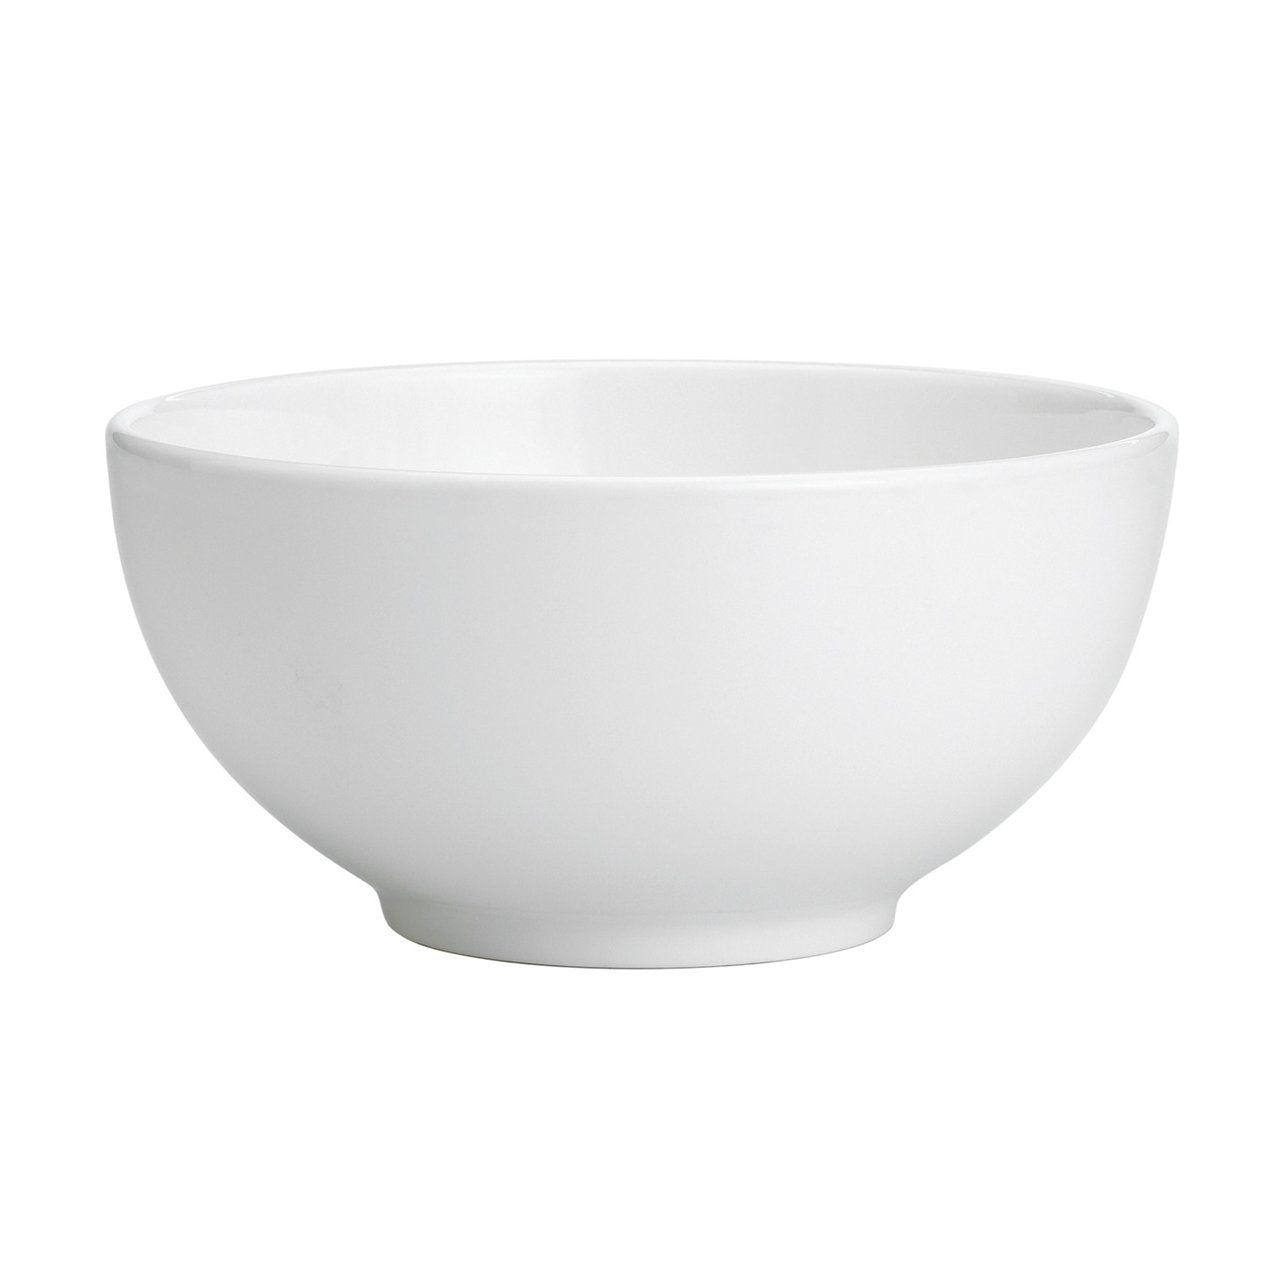 White All Purpose Bowl